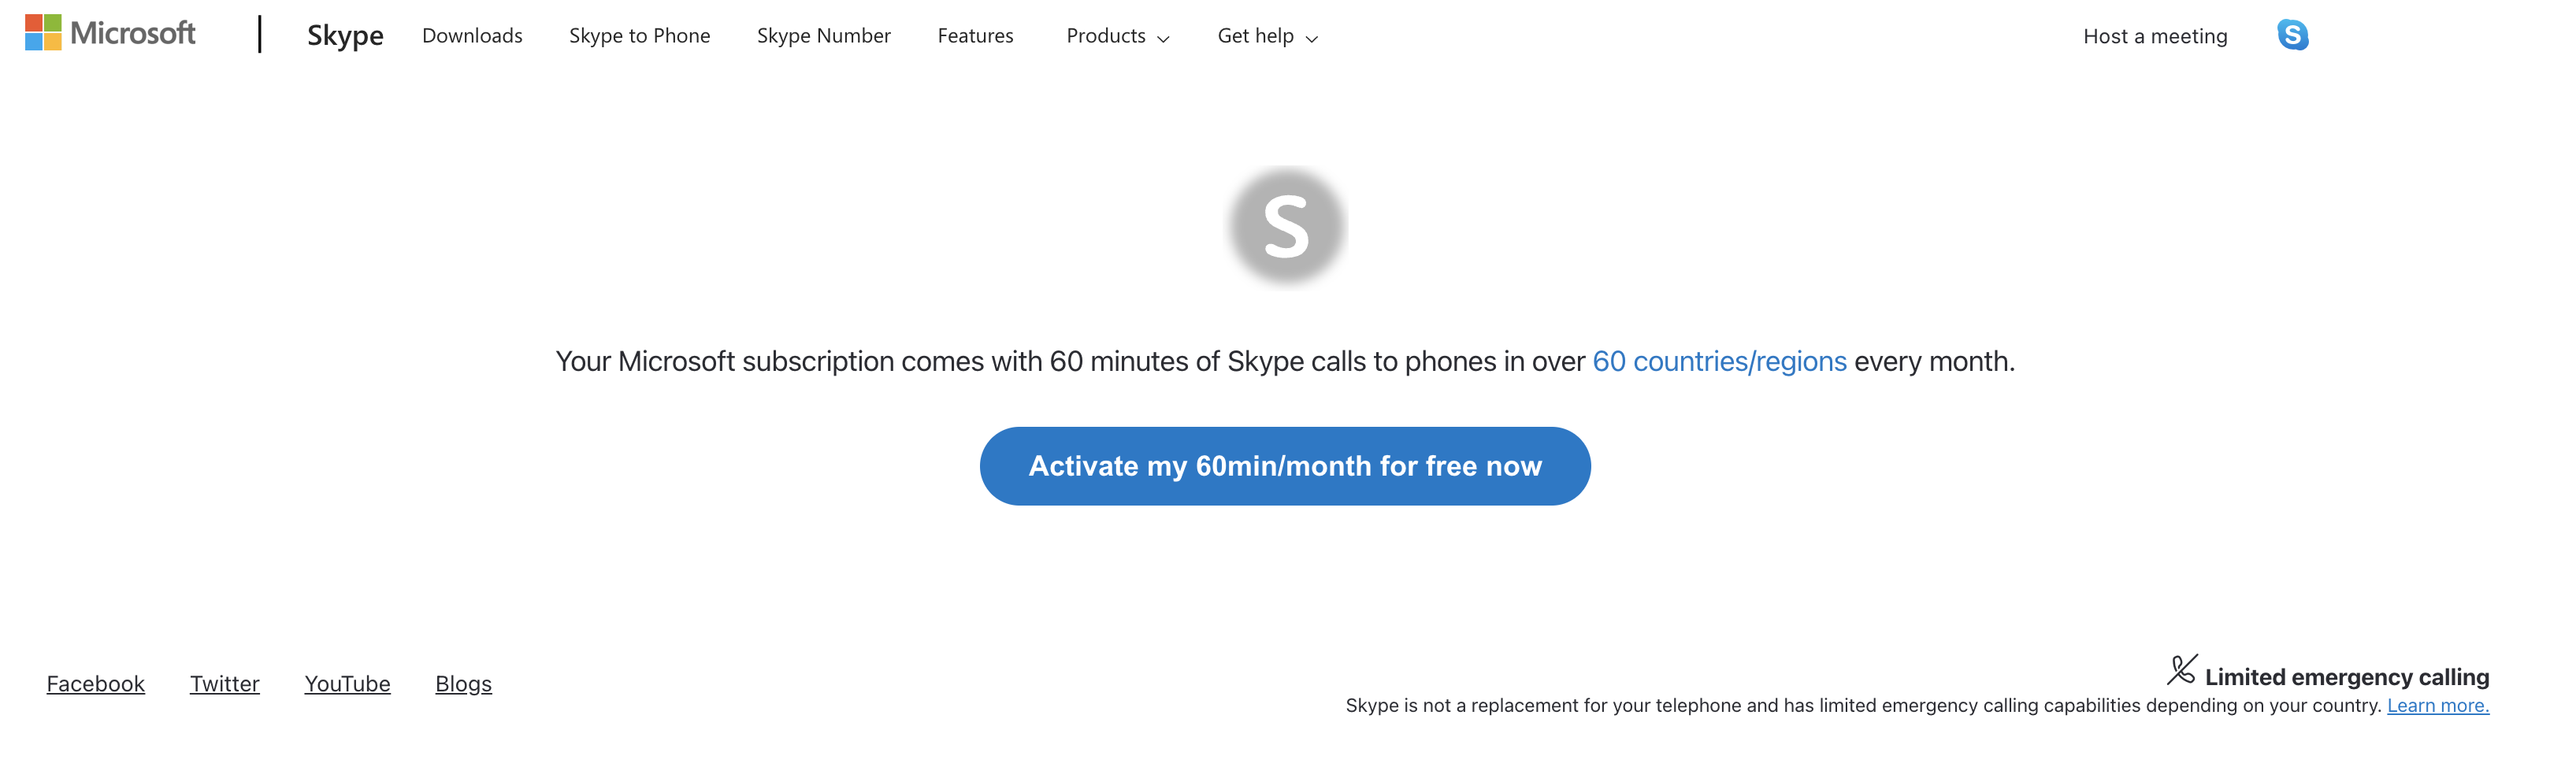 Page web pour activer gratuitement 60 minutes avec Skype